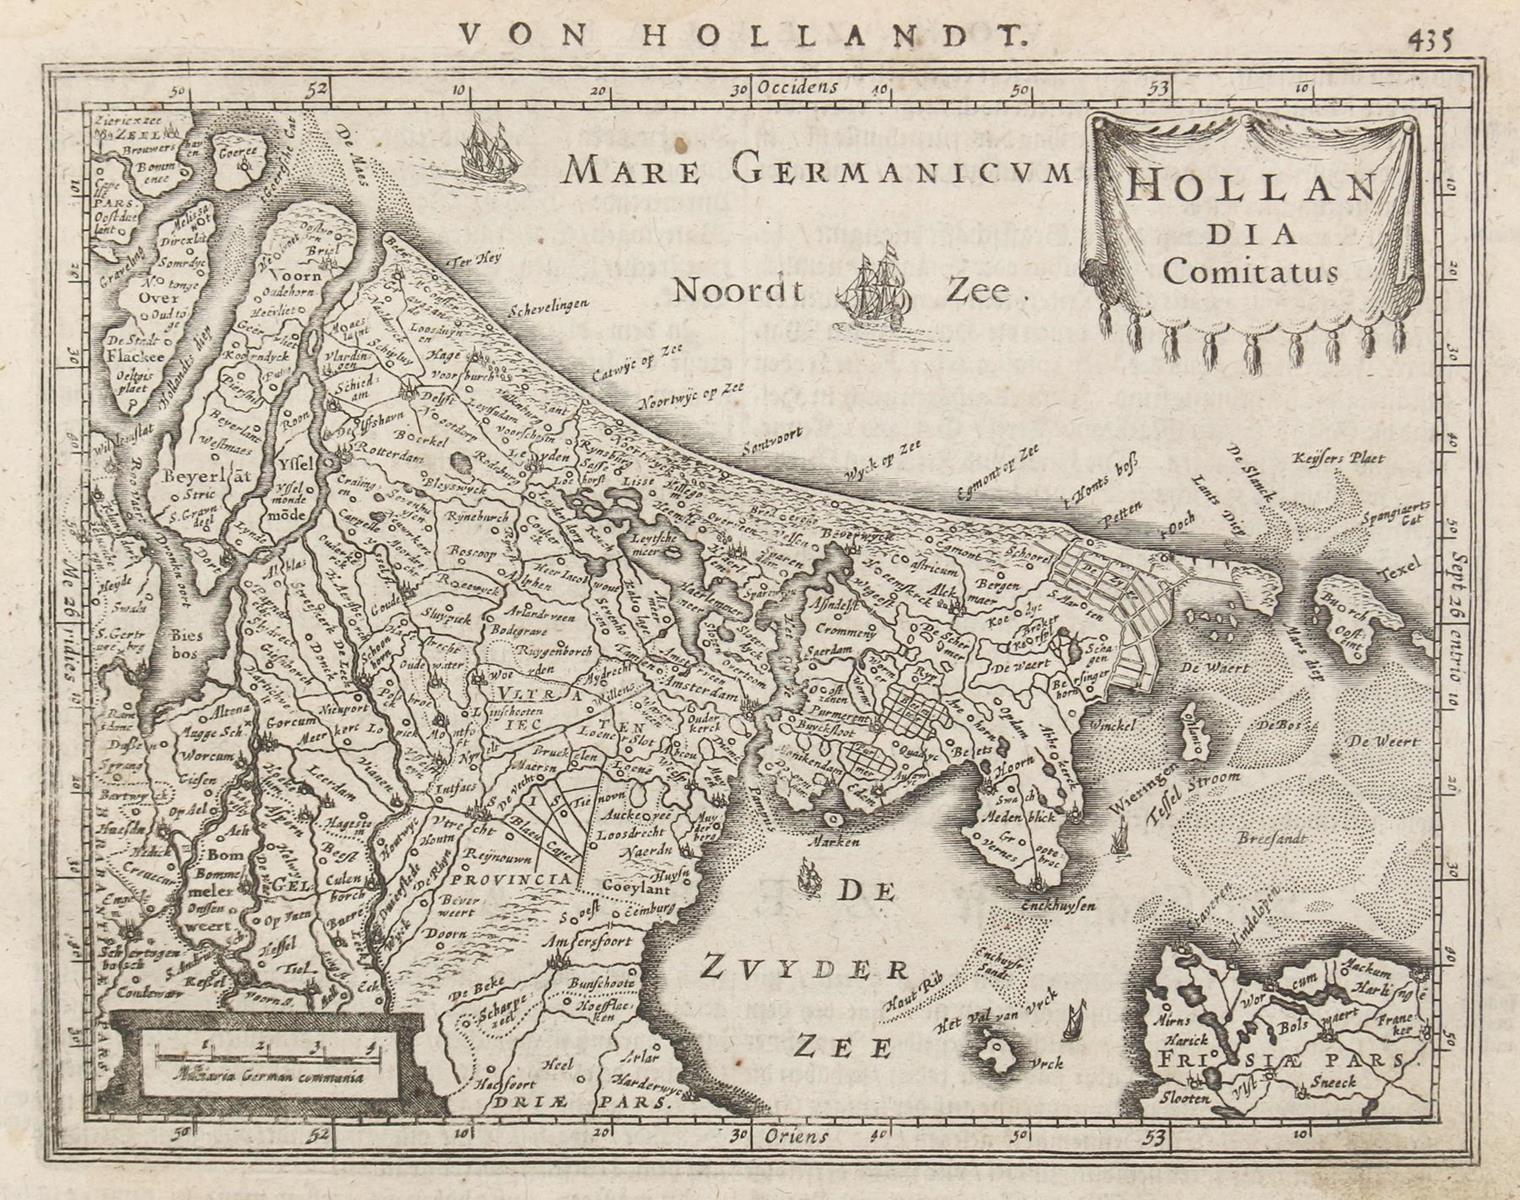 Hollandia Comitatus. - Zeelandia Comitatus. | Bild Nr.1